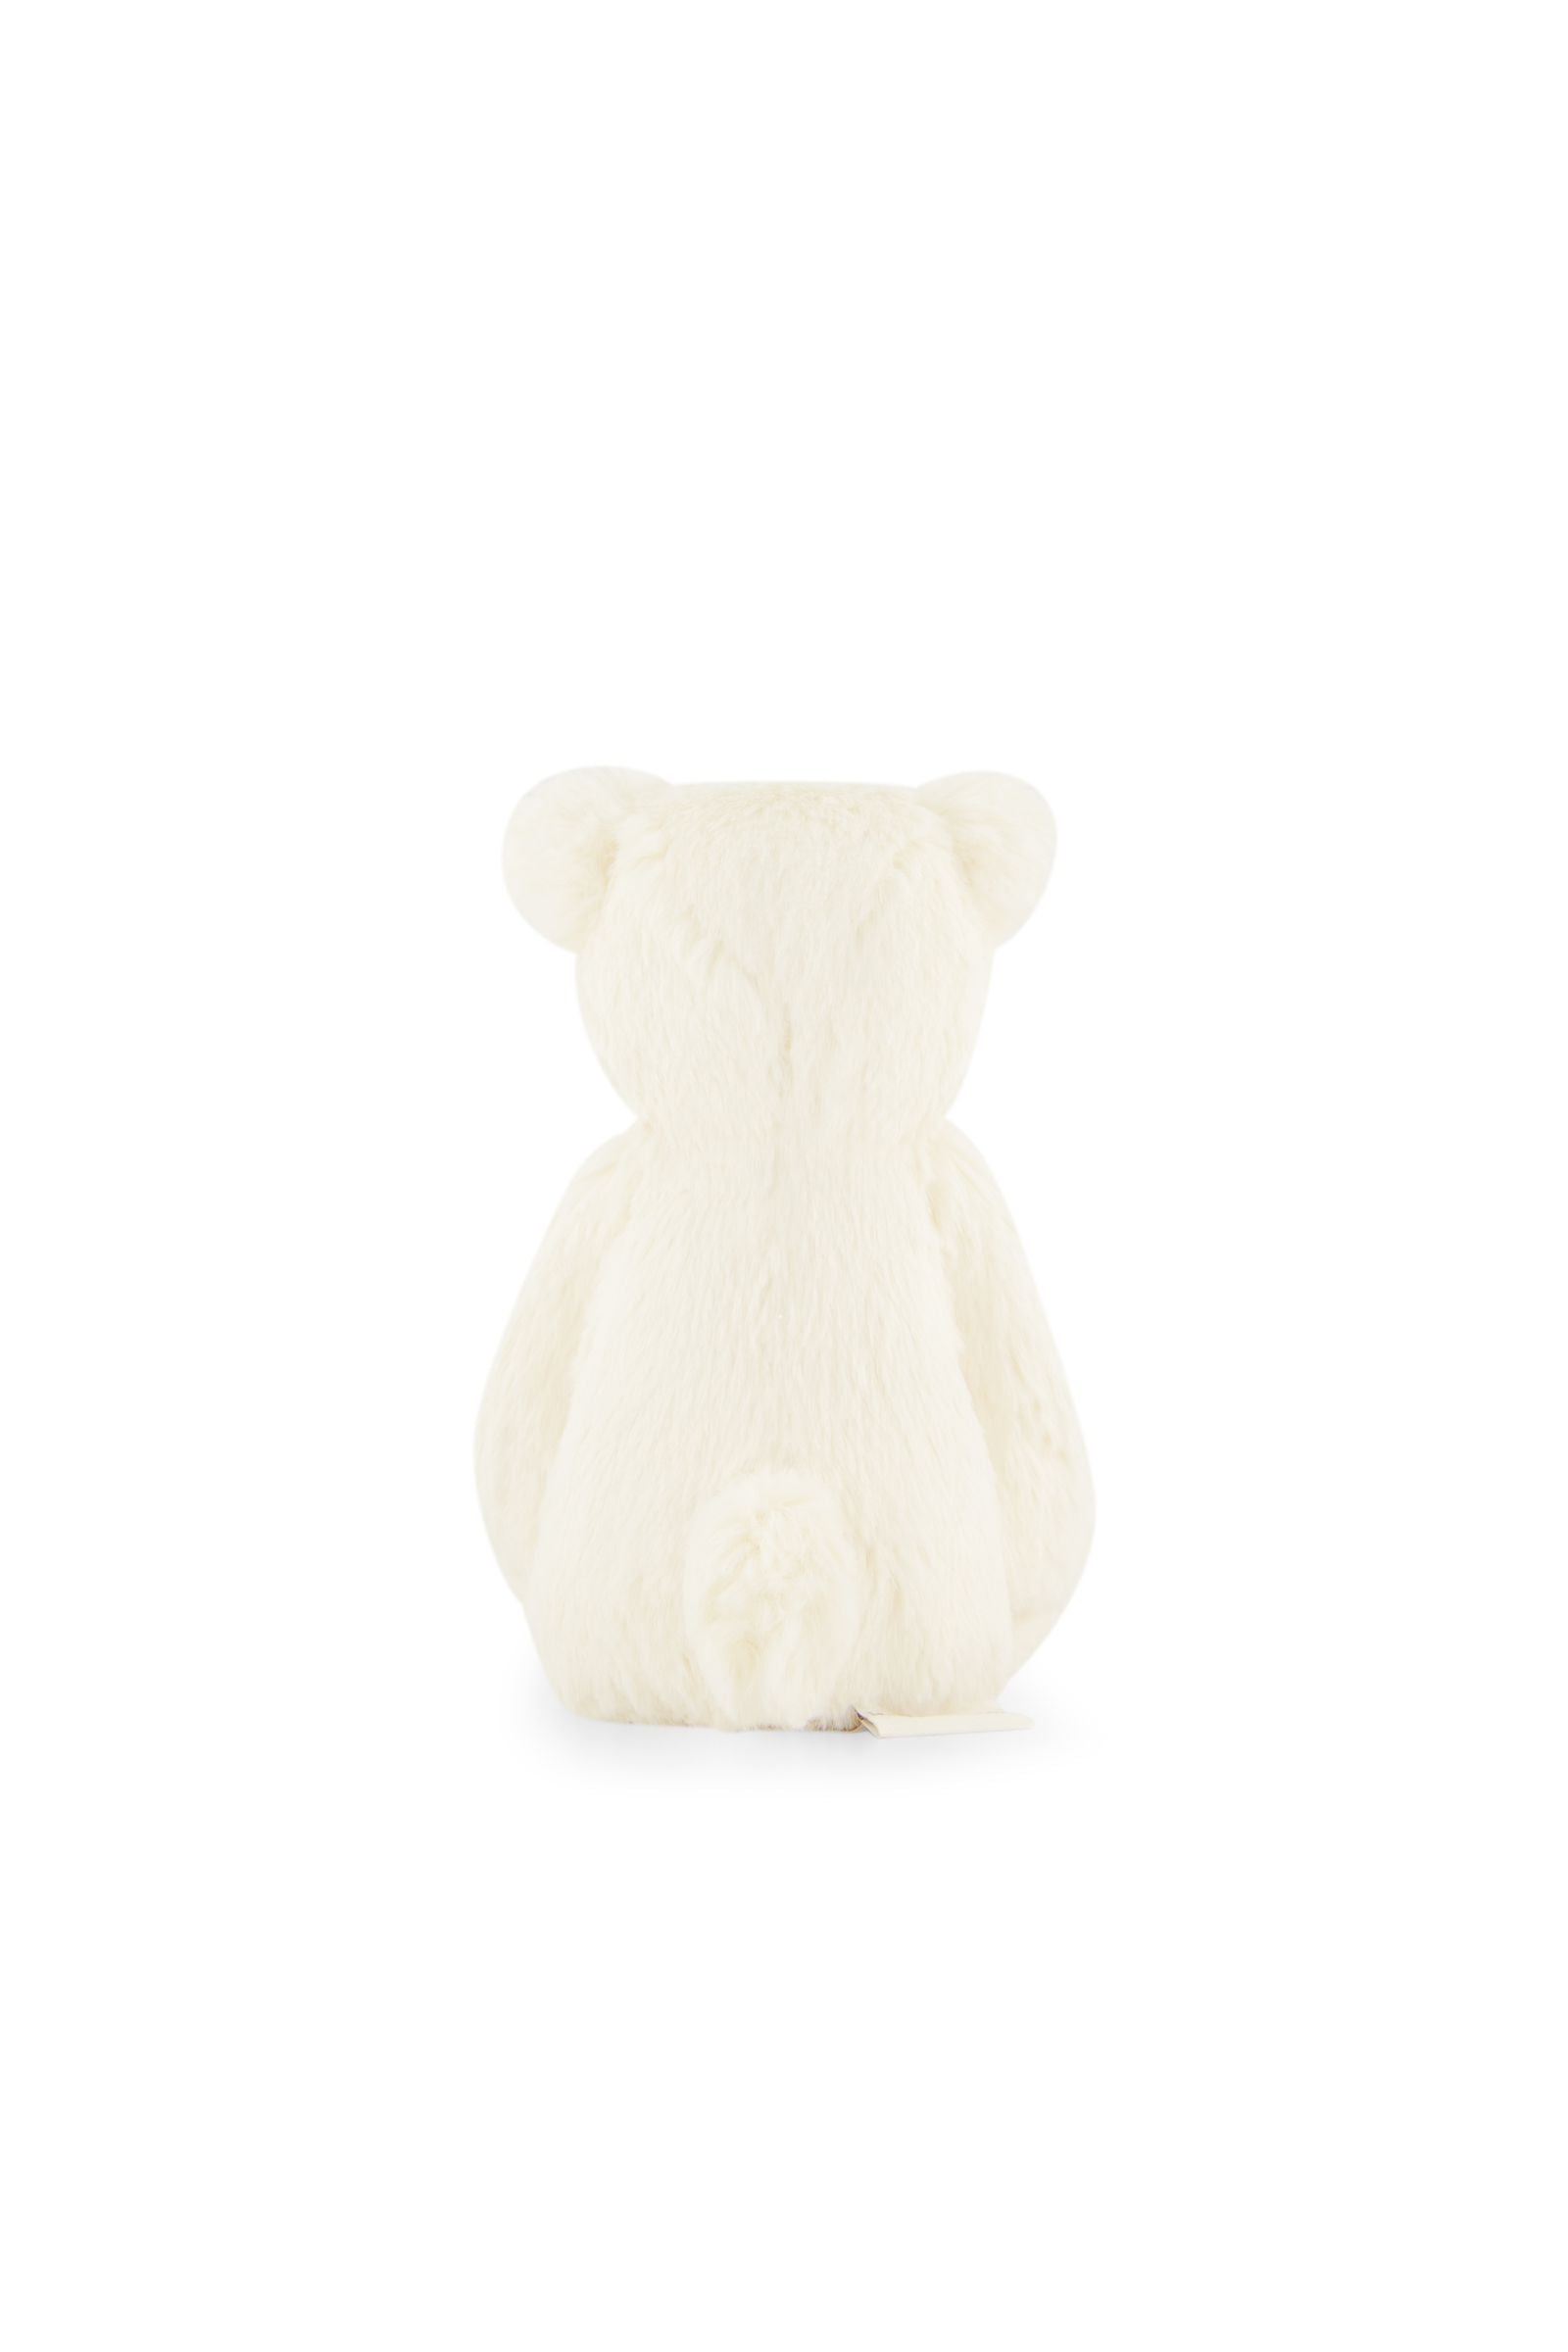 Snuggle Bunnies - George the Bear - Marshmallow 20cm-Toys-Jamie Kay-The Bay Room